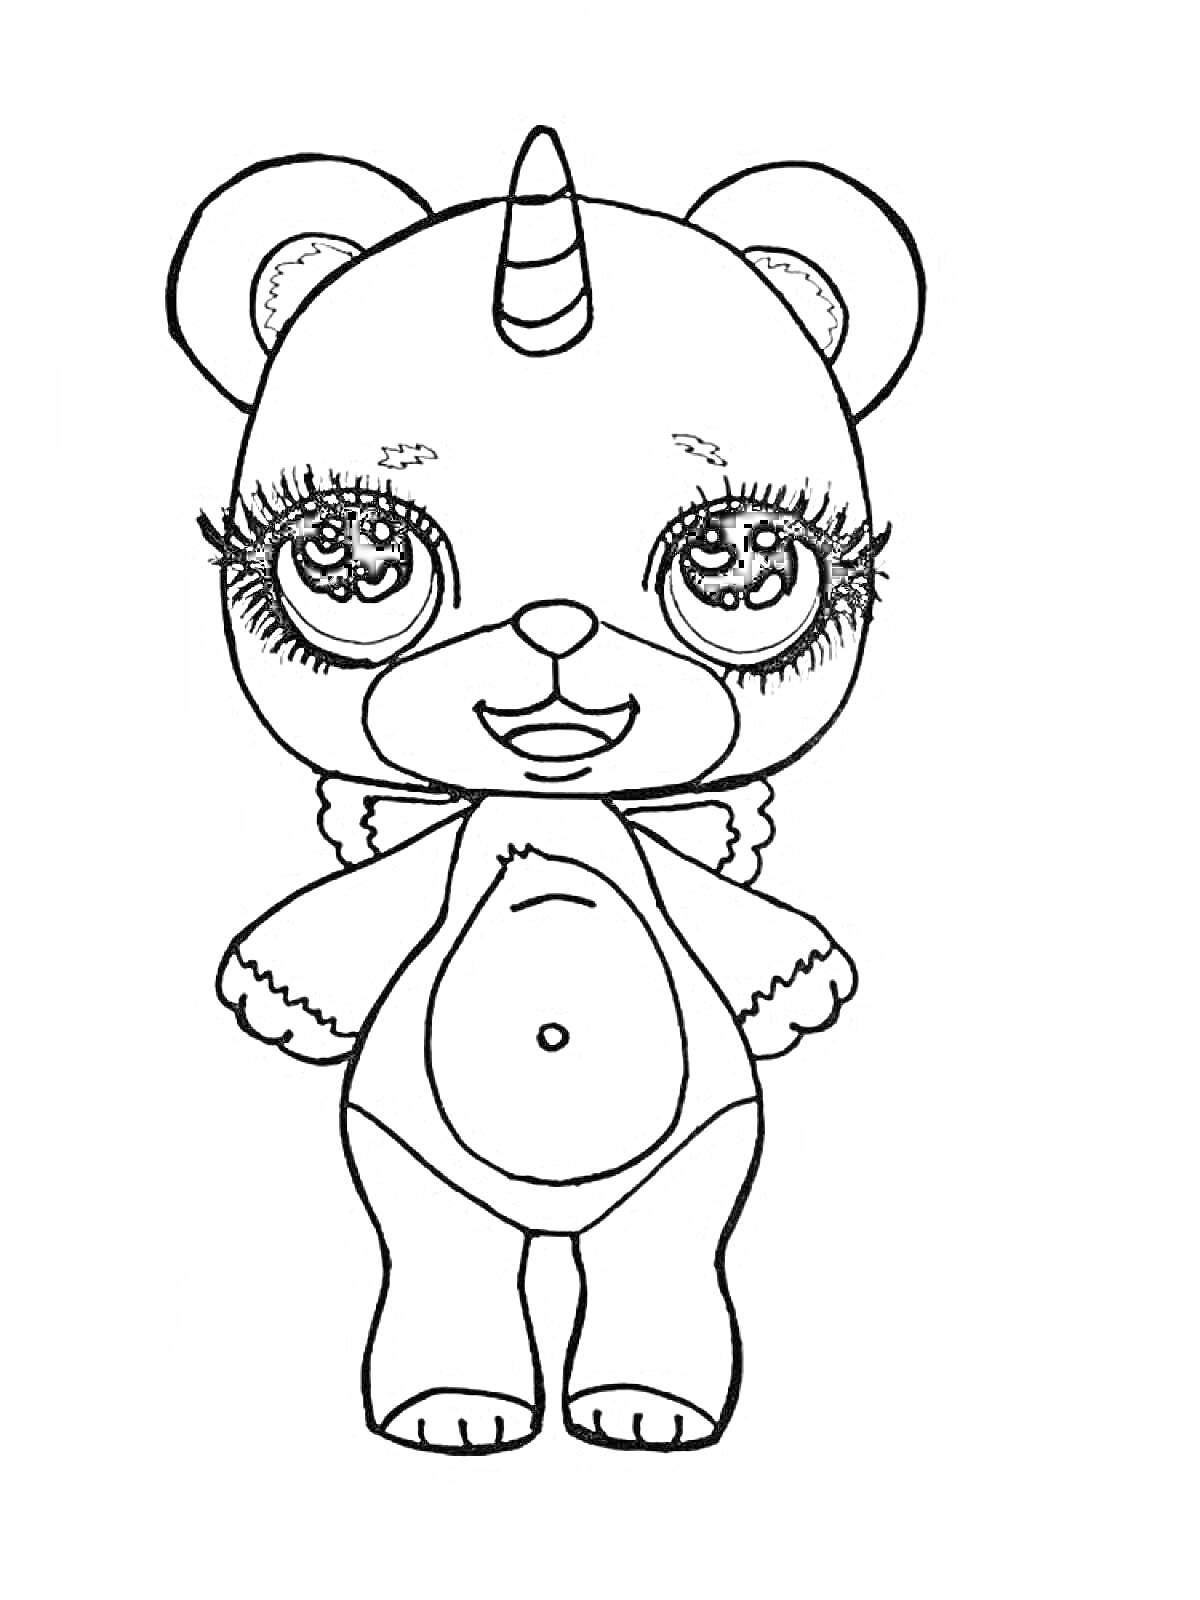 Раскраска Единорог-медвежонок с большими глазами, кудрявыми ресницами и бантиком